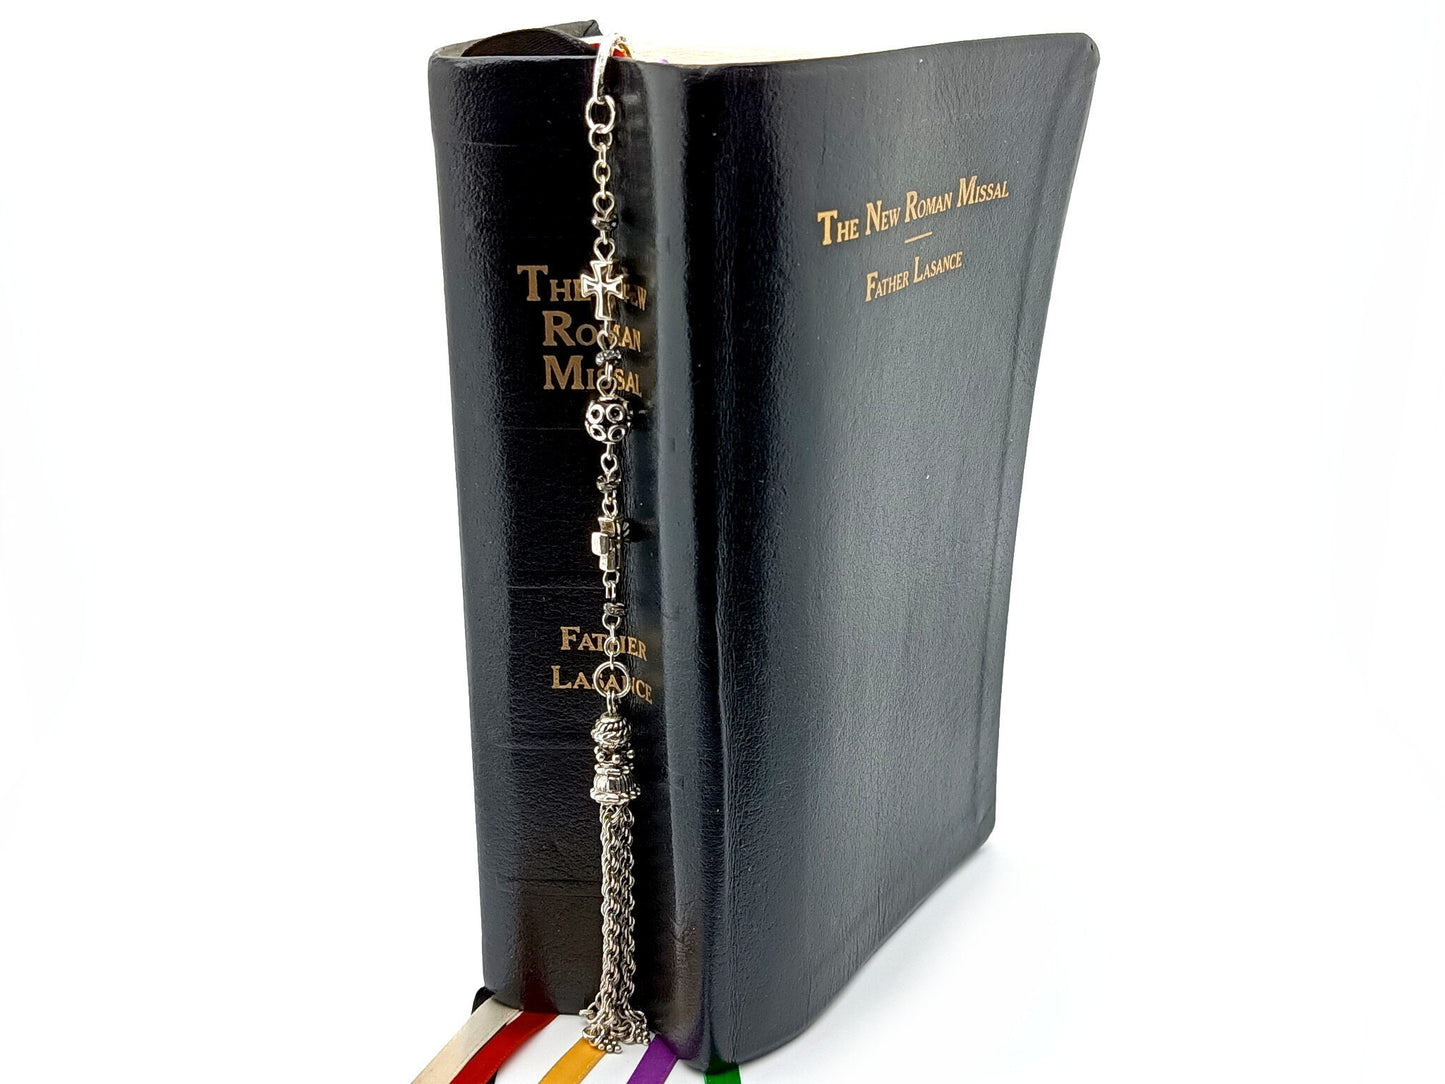 Tassel unique rosary beads Catholic religious bookmark.